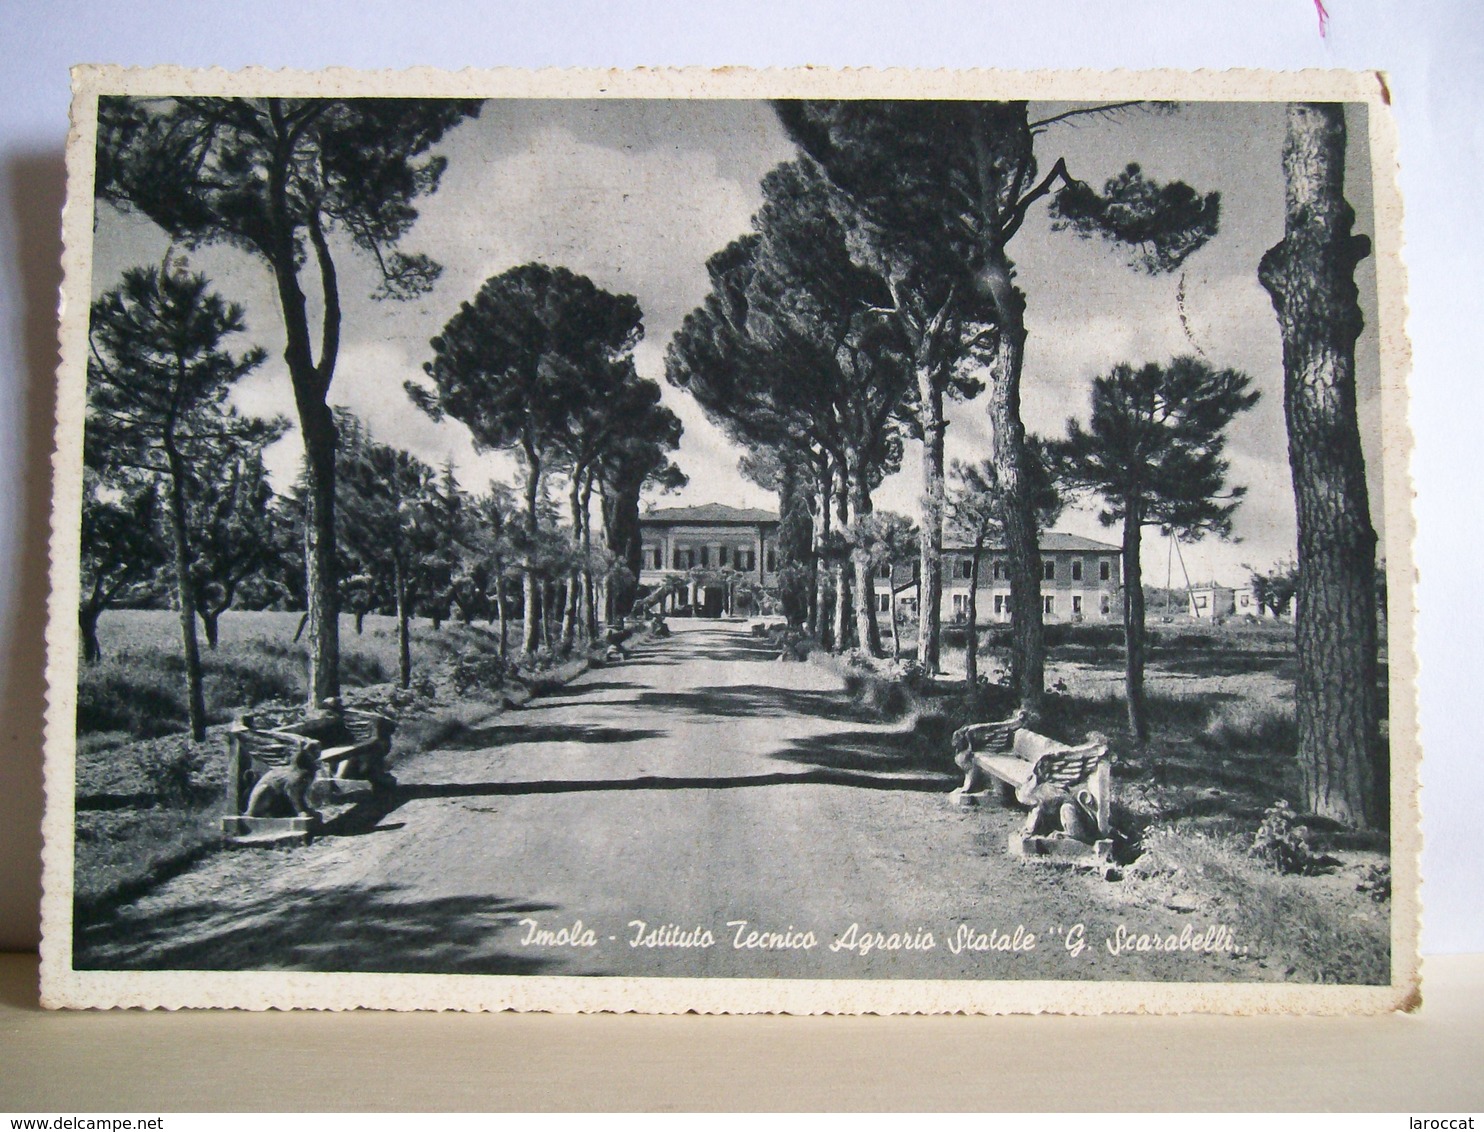 1957 - Imola - Istituto Tecnico Agrario G. Scarabelli - Scuola - Cartolina Storica Originale - Imola